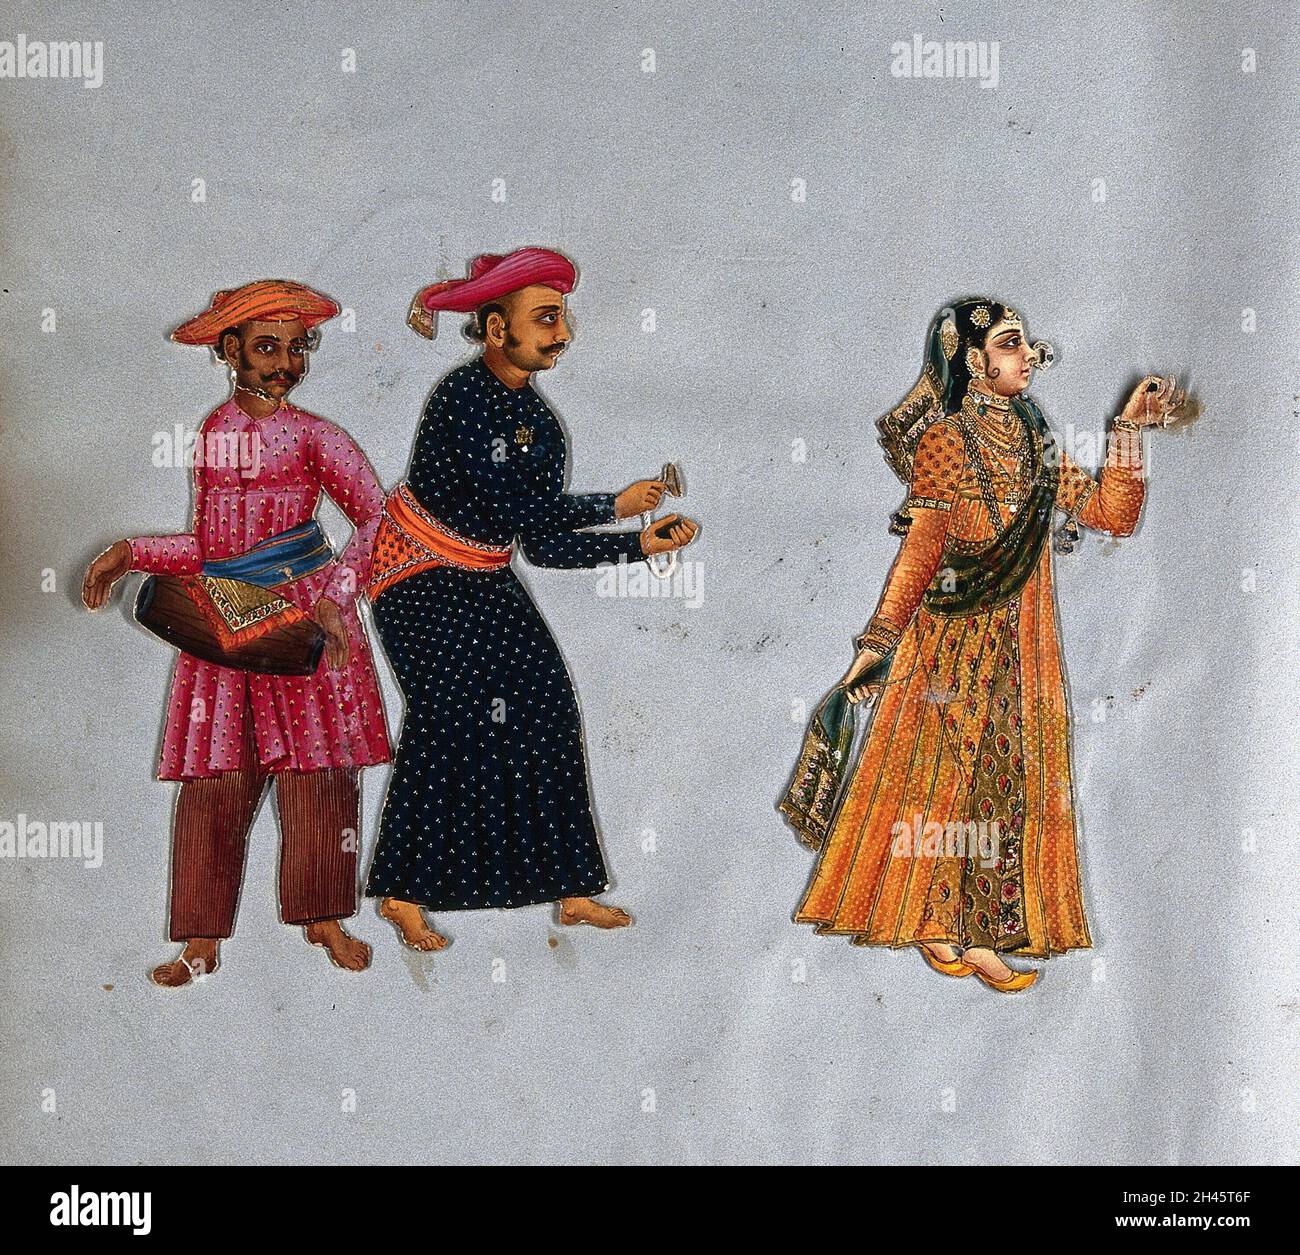 Une dansante musulmane avec deux musiciens masculins du sud de l'Inde.Peinture gouache. Banque D'Images